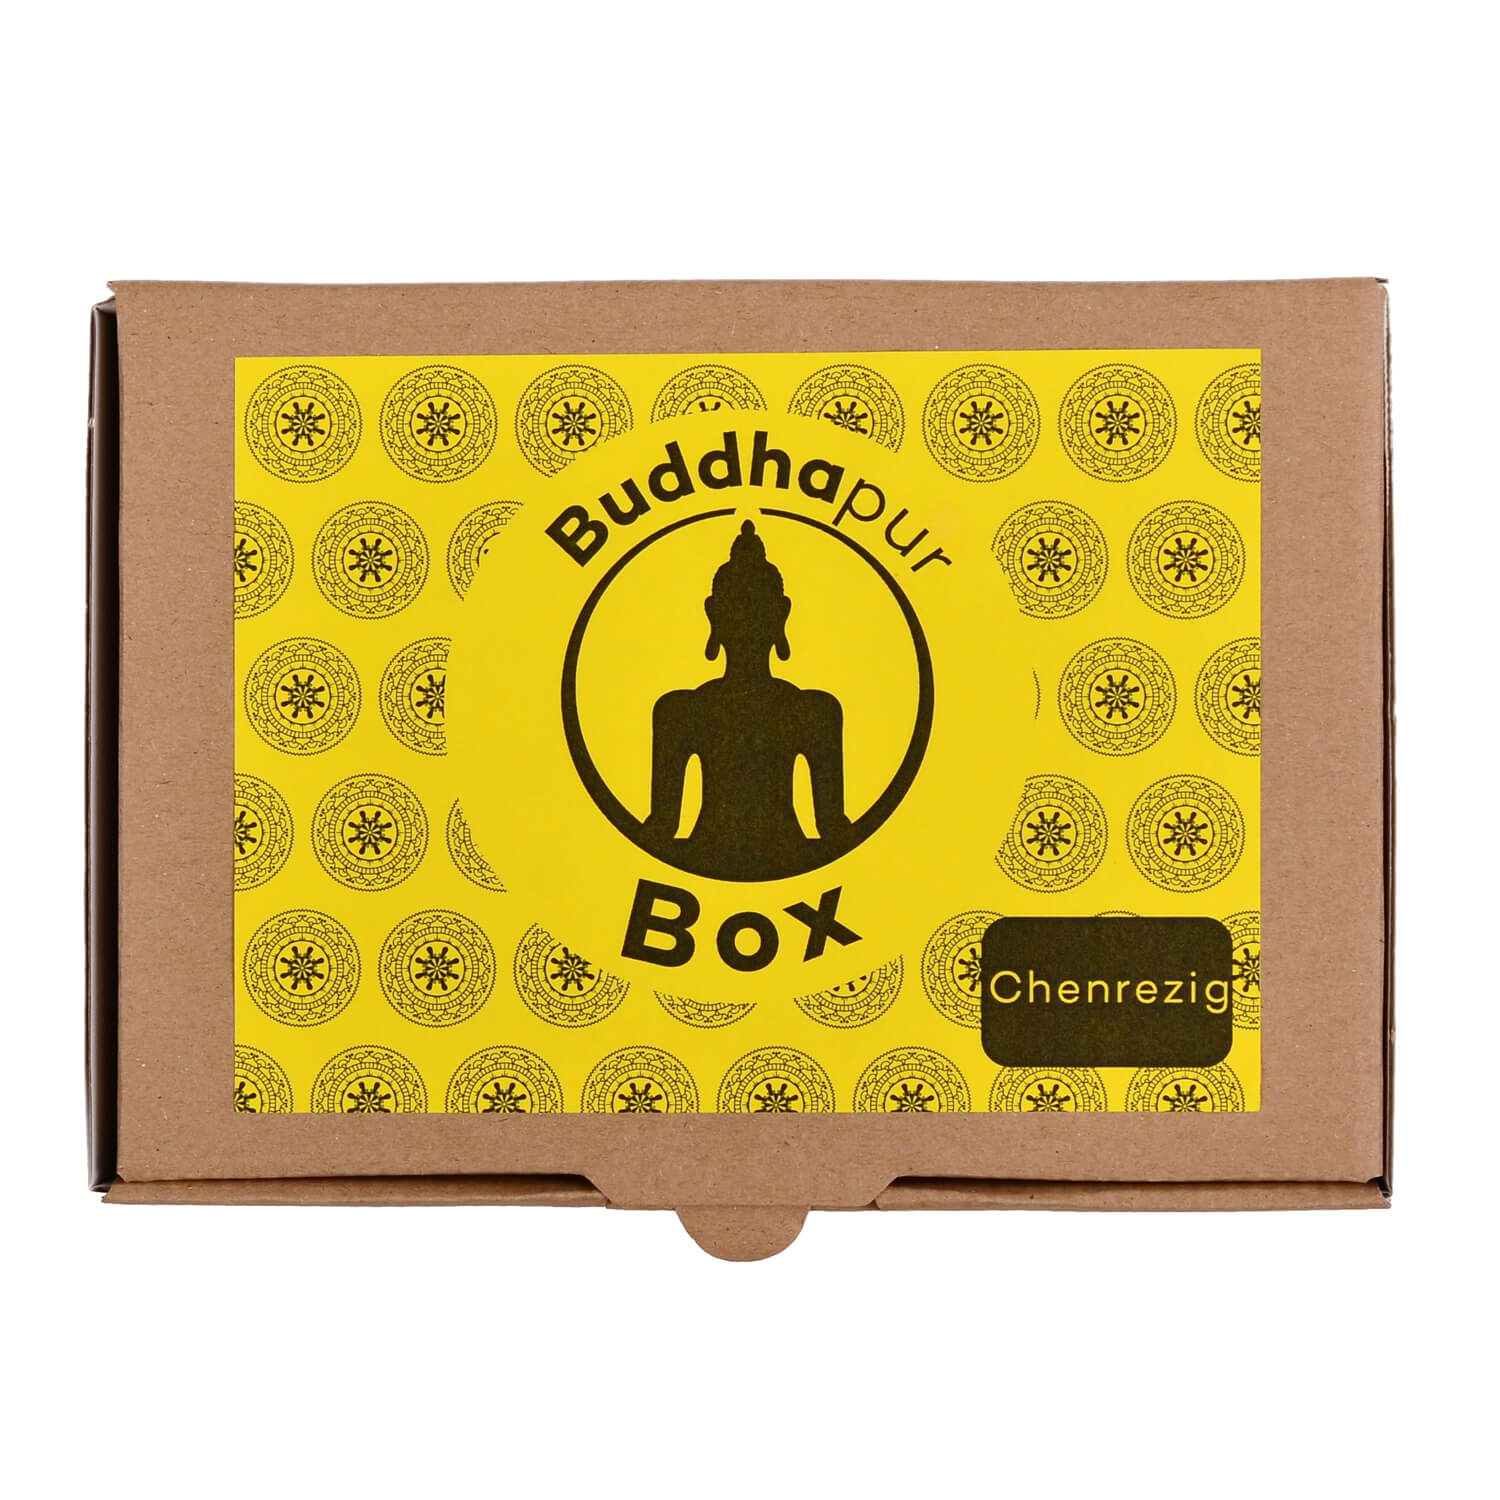 Buddhapur Box Chenrezig: Verpackung